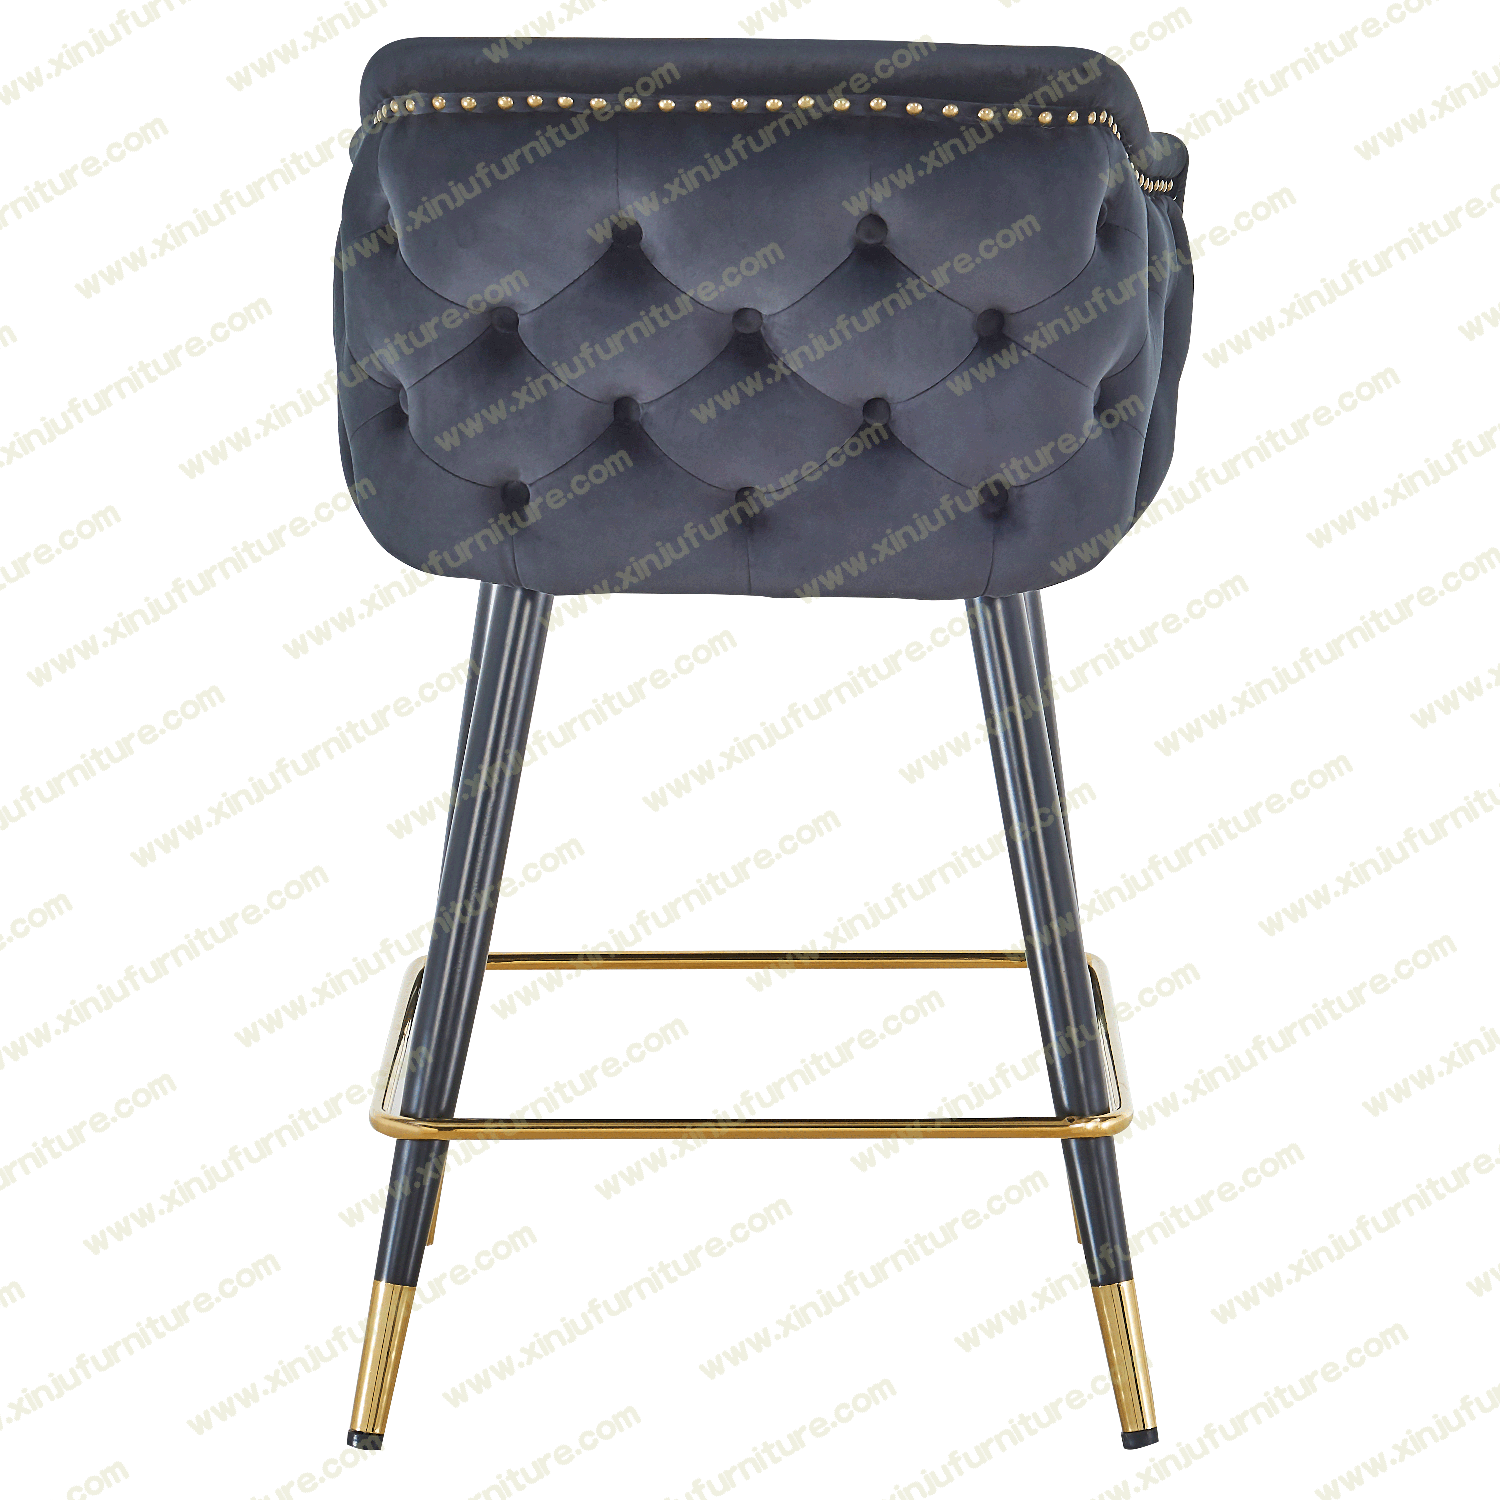 High grade black bar stool